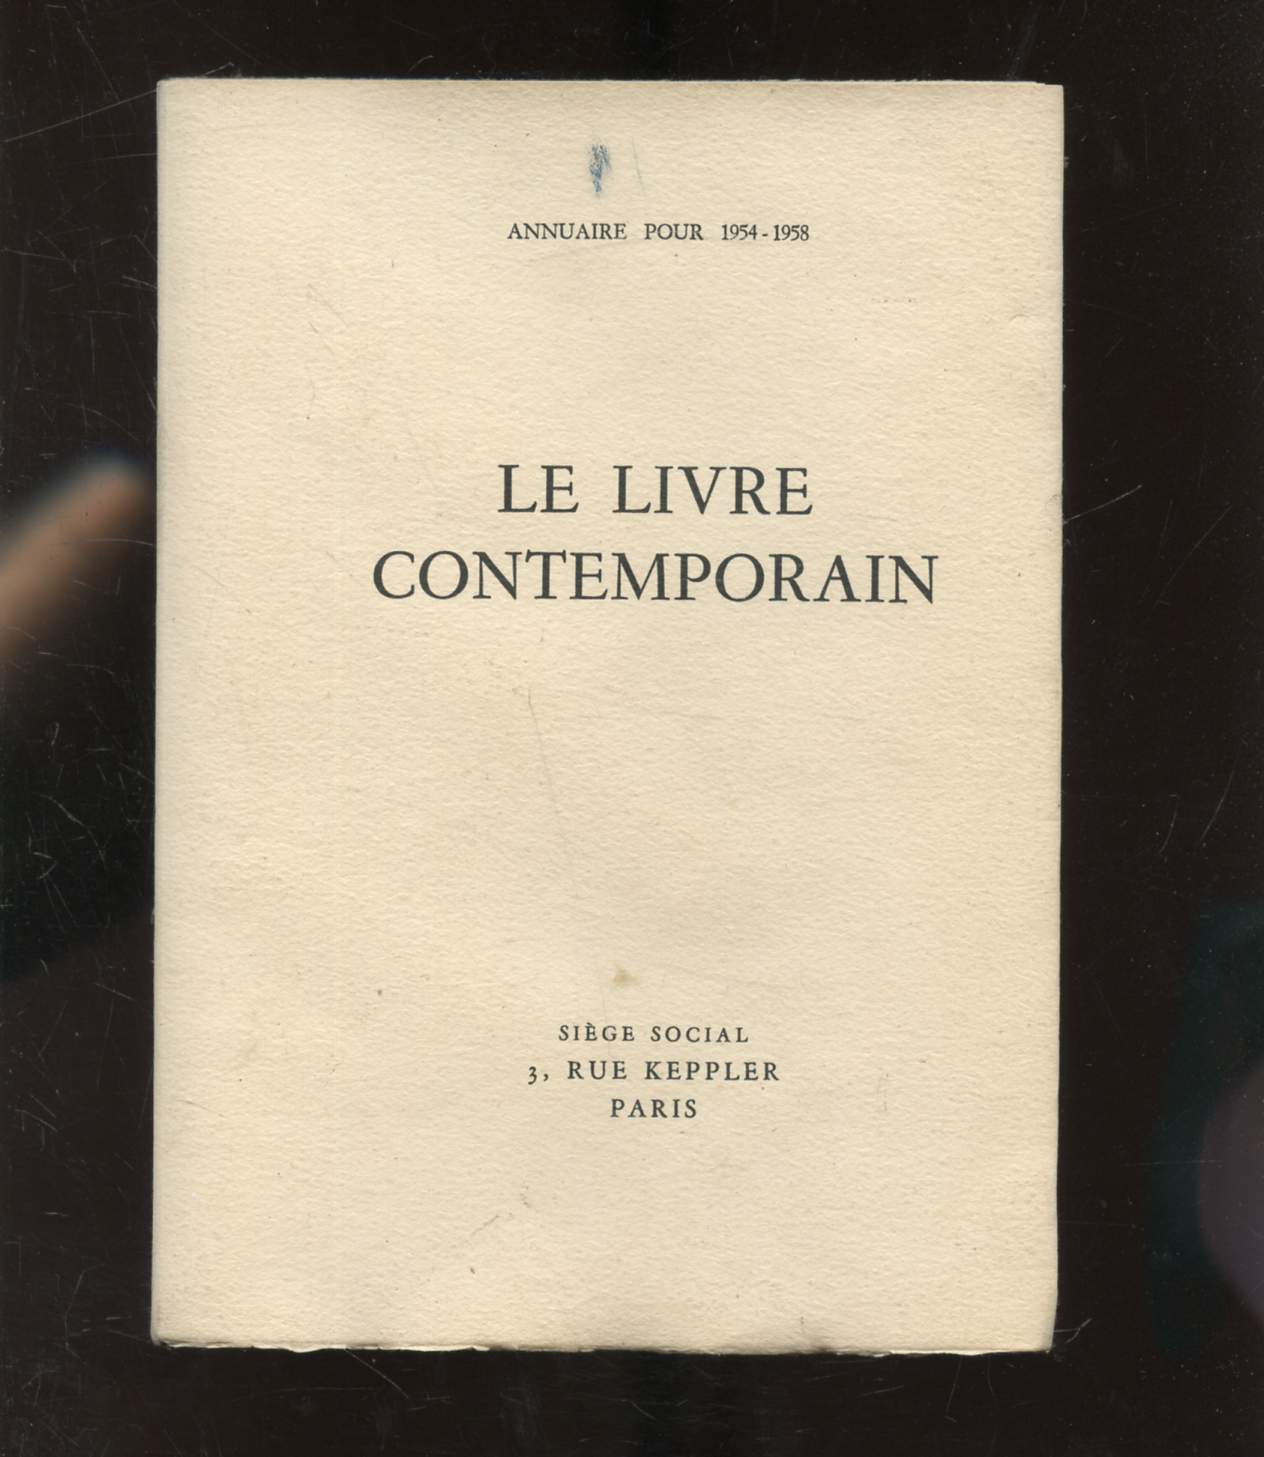 ANNUAIRE POUR 1954-1958 - LE LIVRE CONTEMPORAIN